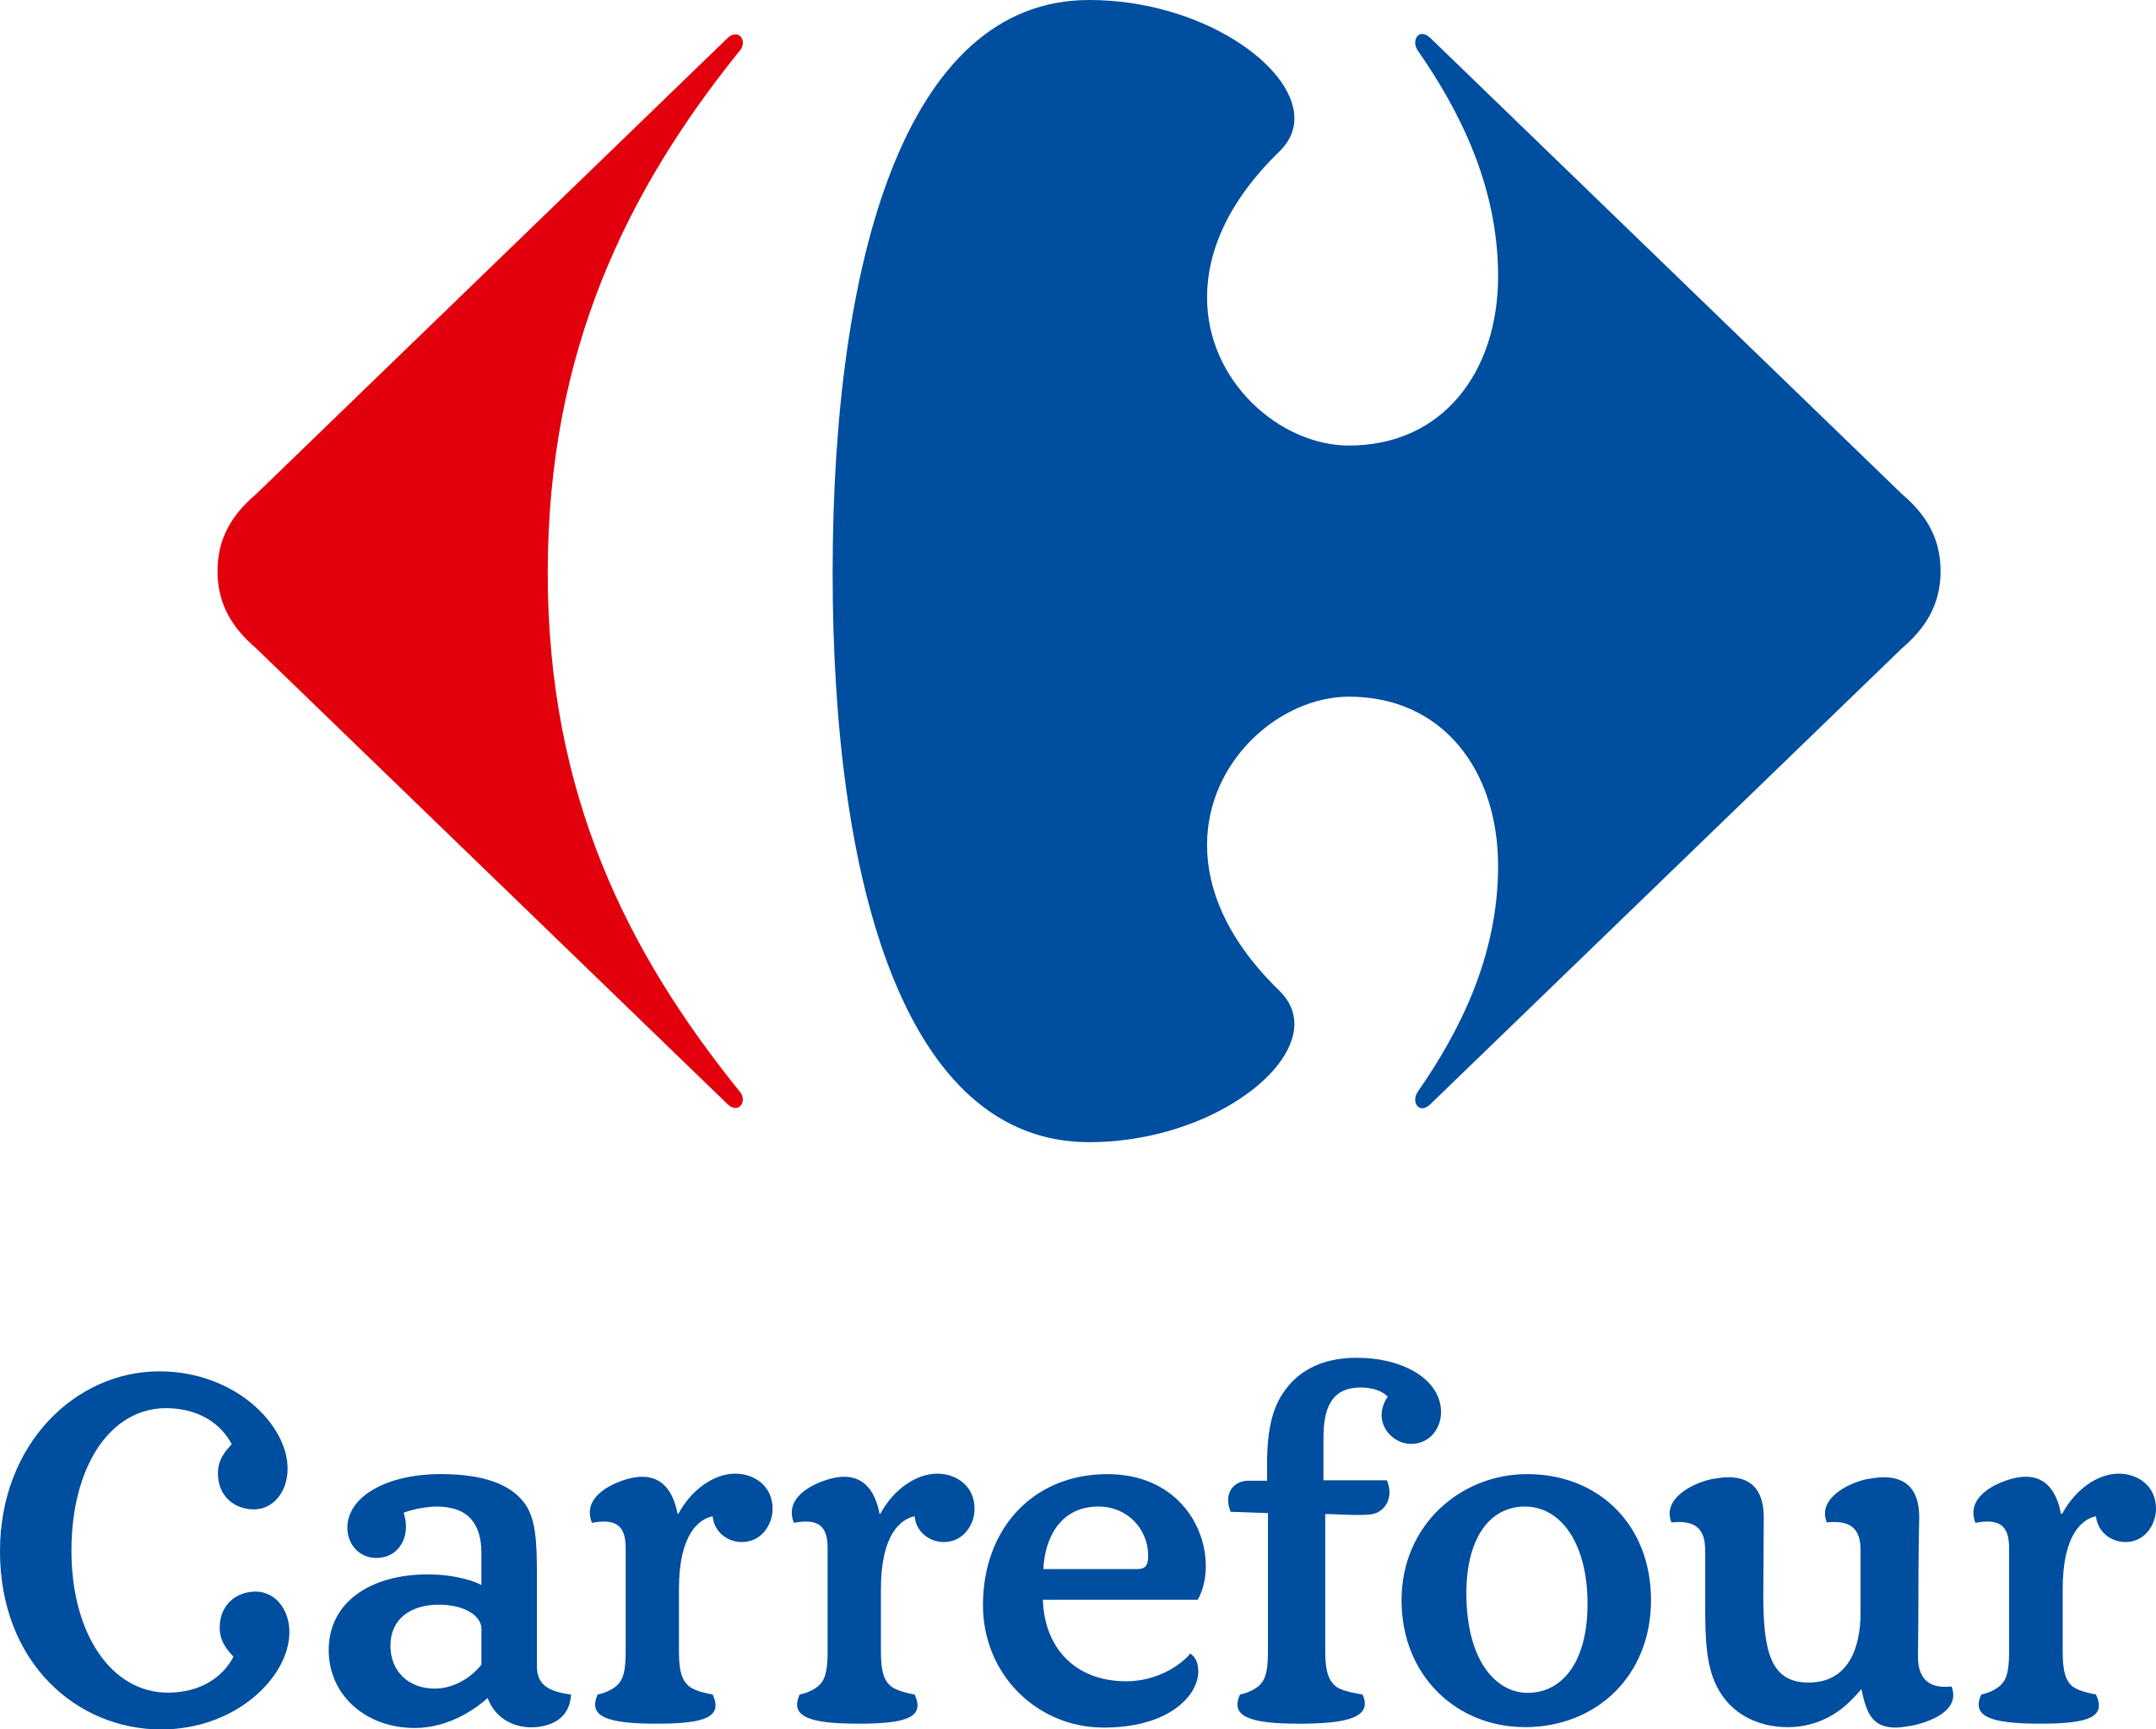 Carrefour_logo.svg